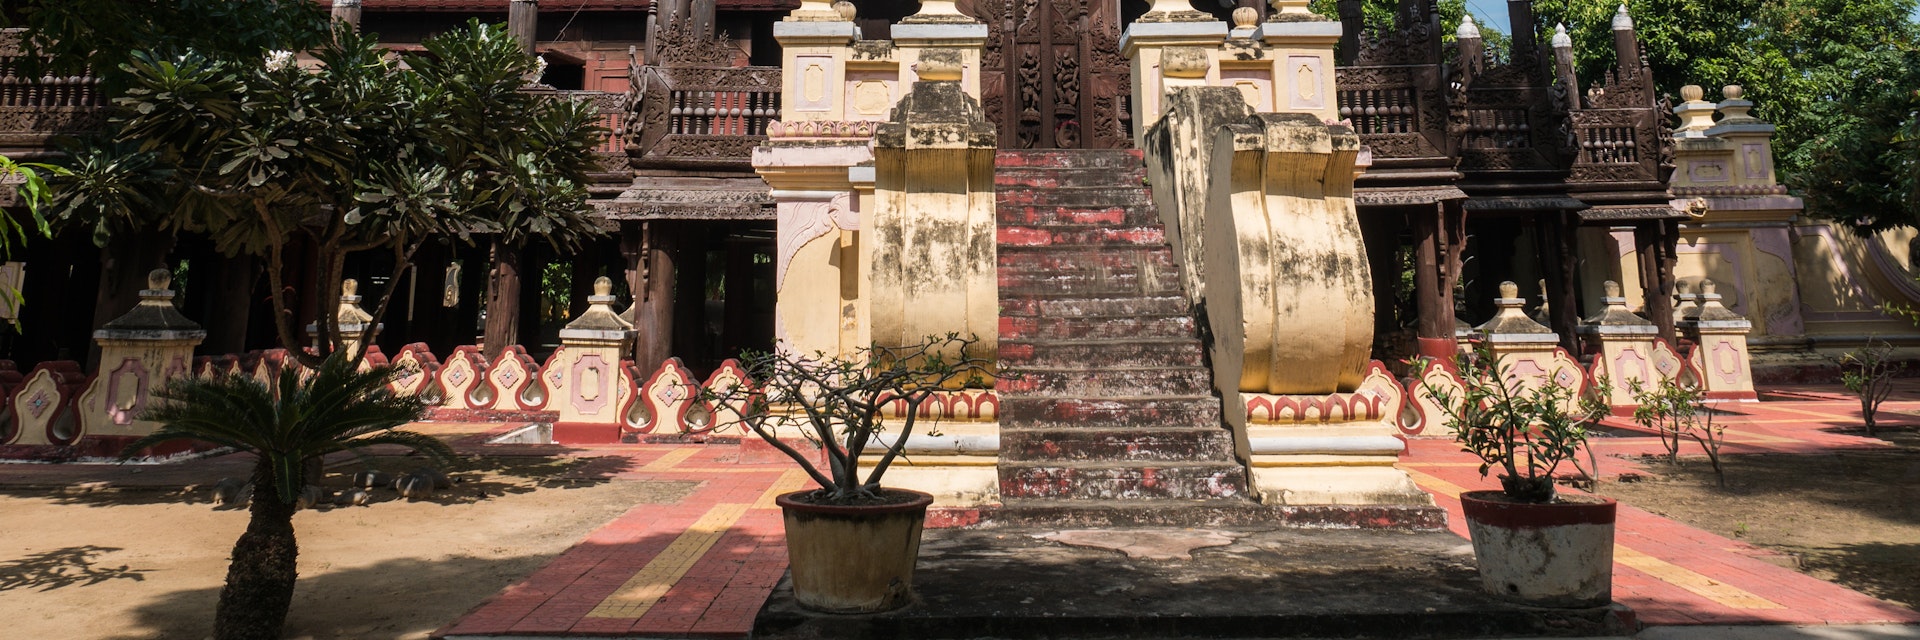 The Shwe In Bin Monastery, the old teakwood sculpture temple in Mandalay, Myanmar.